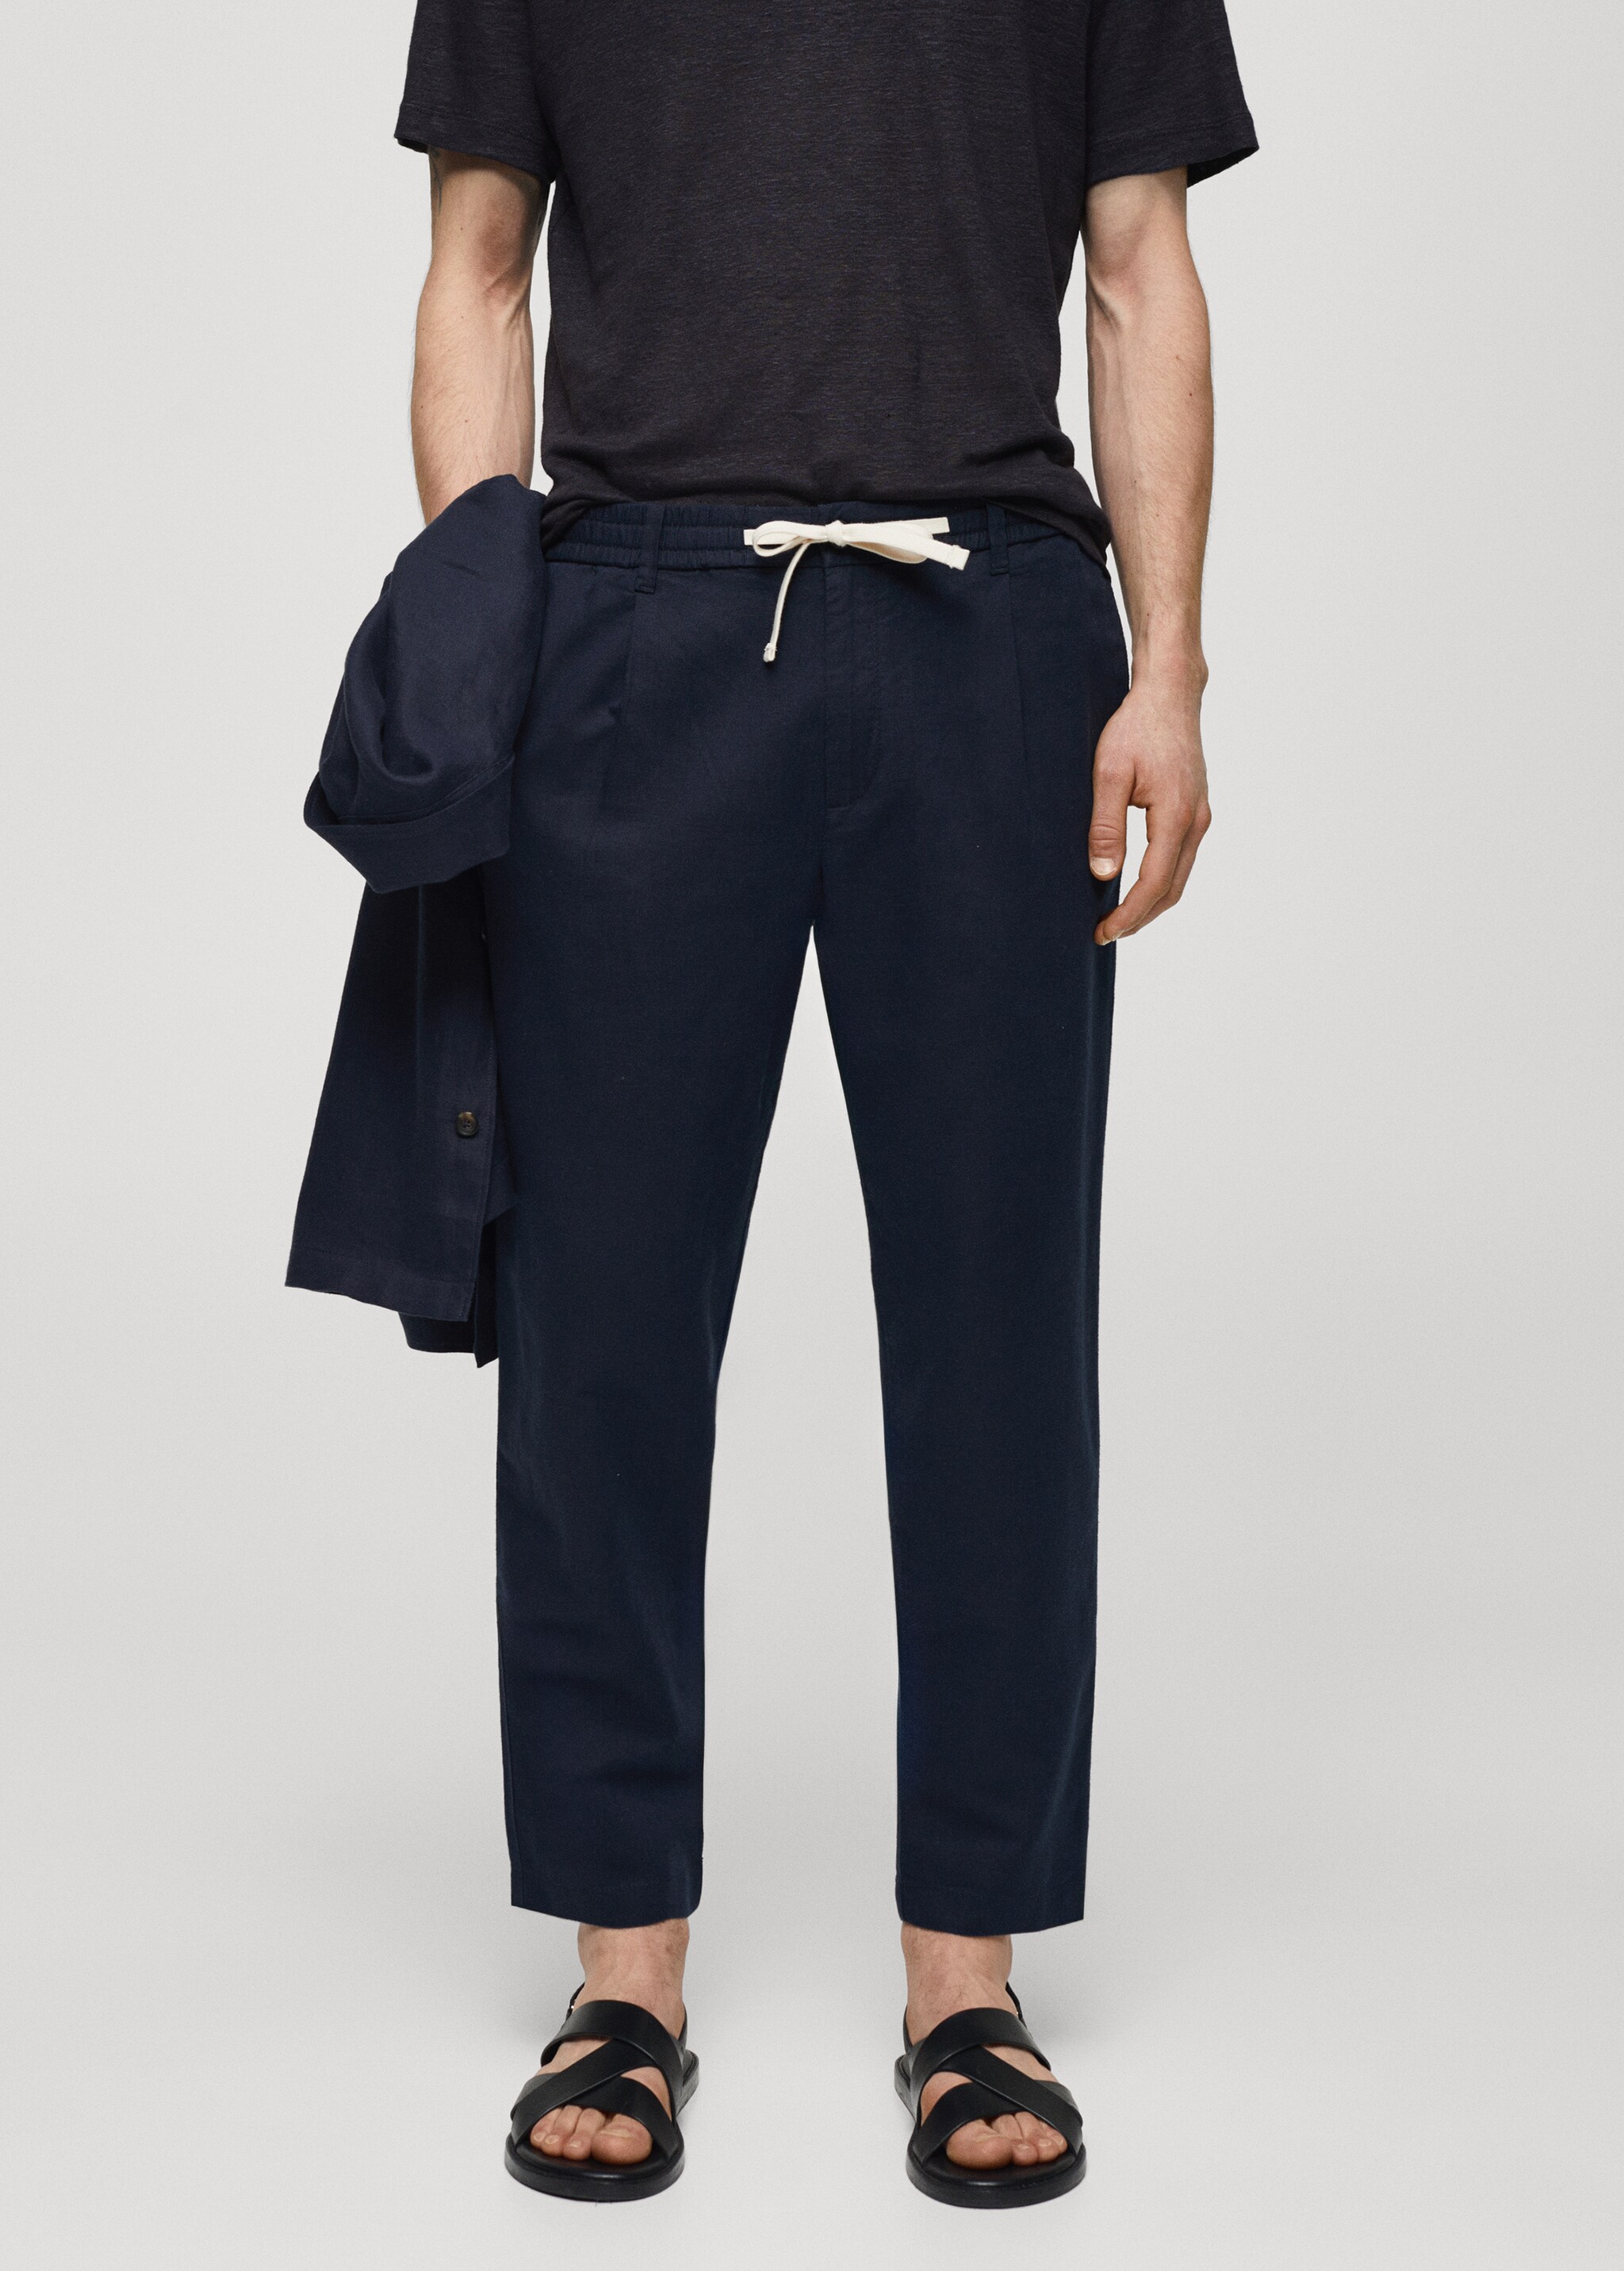 Pantalon slim fit lin cordon - Plan moyen